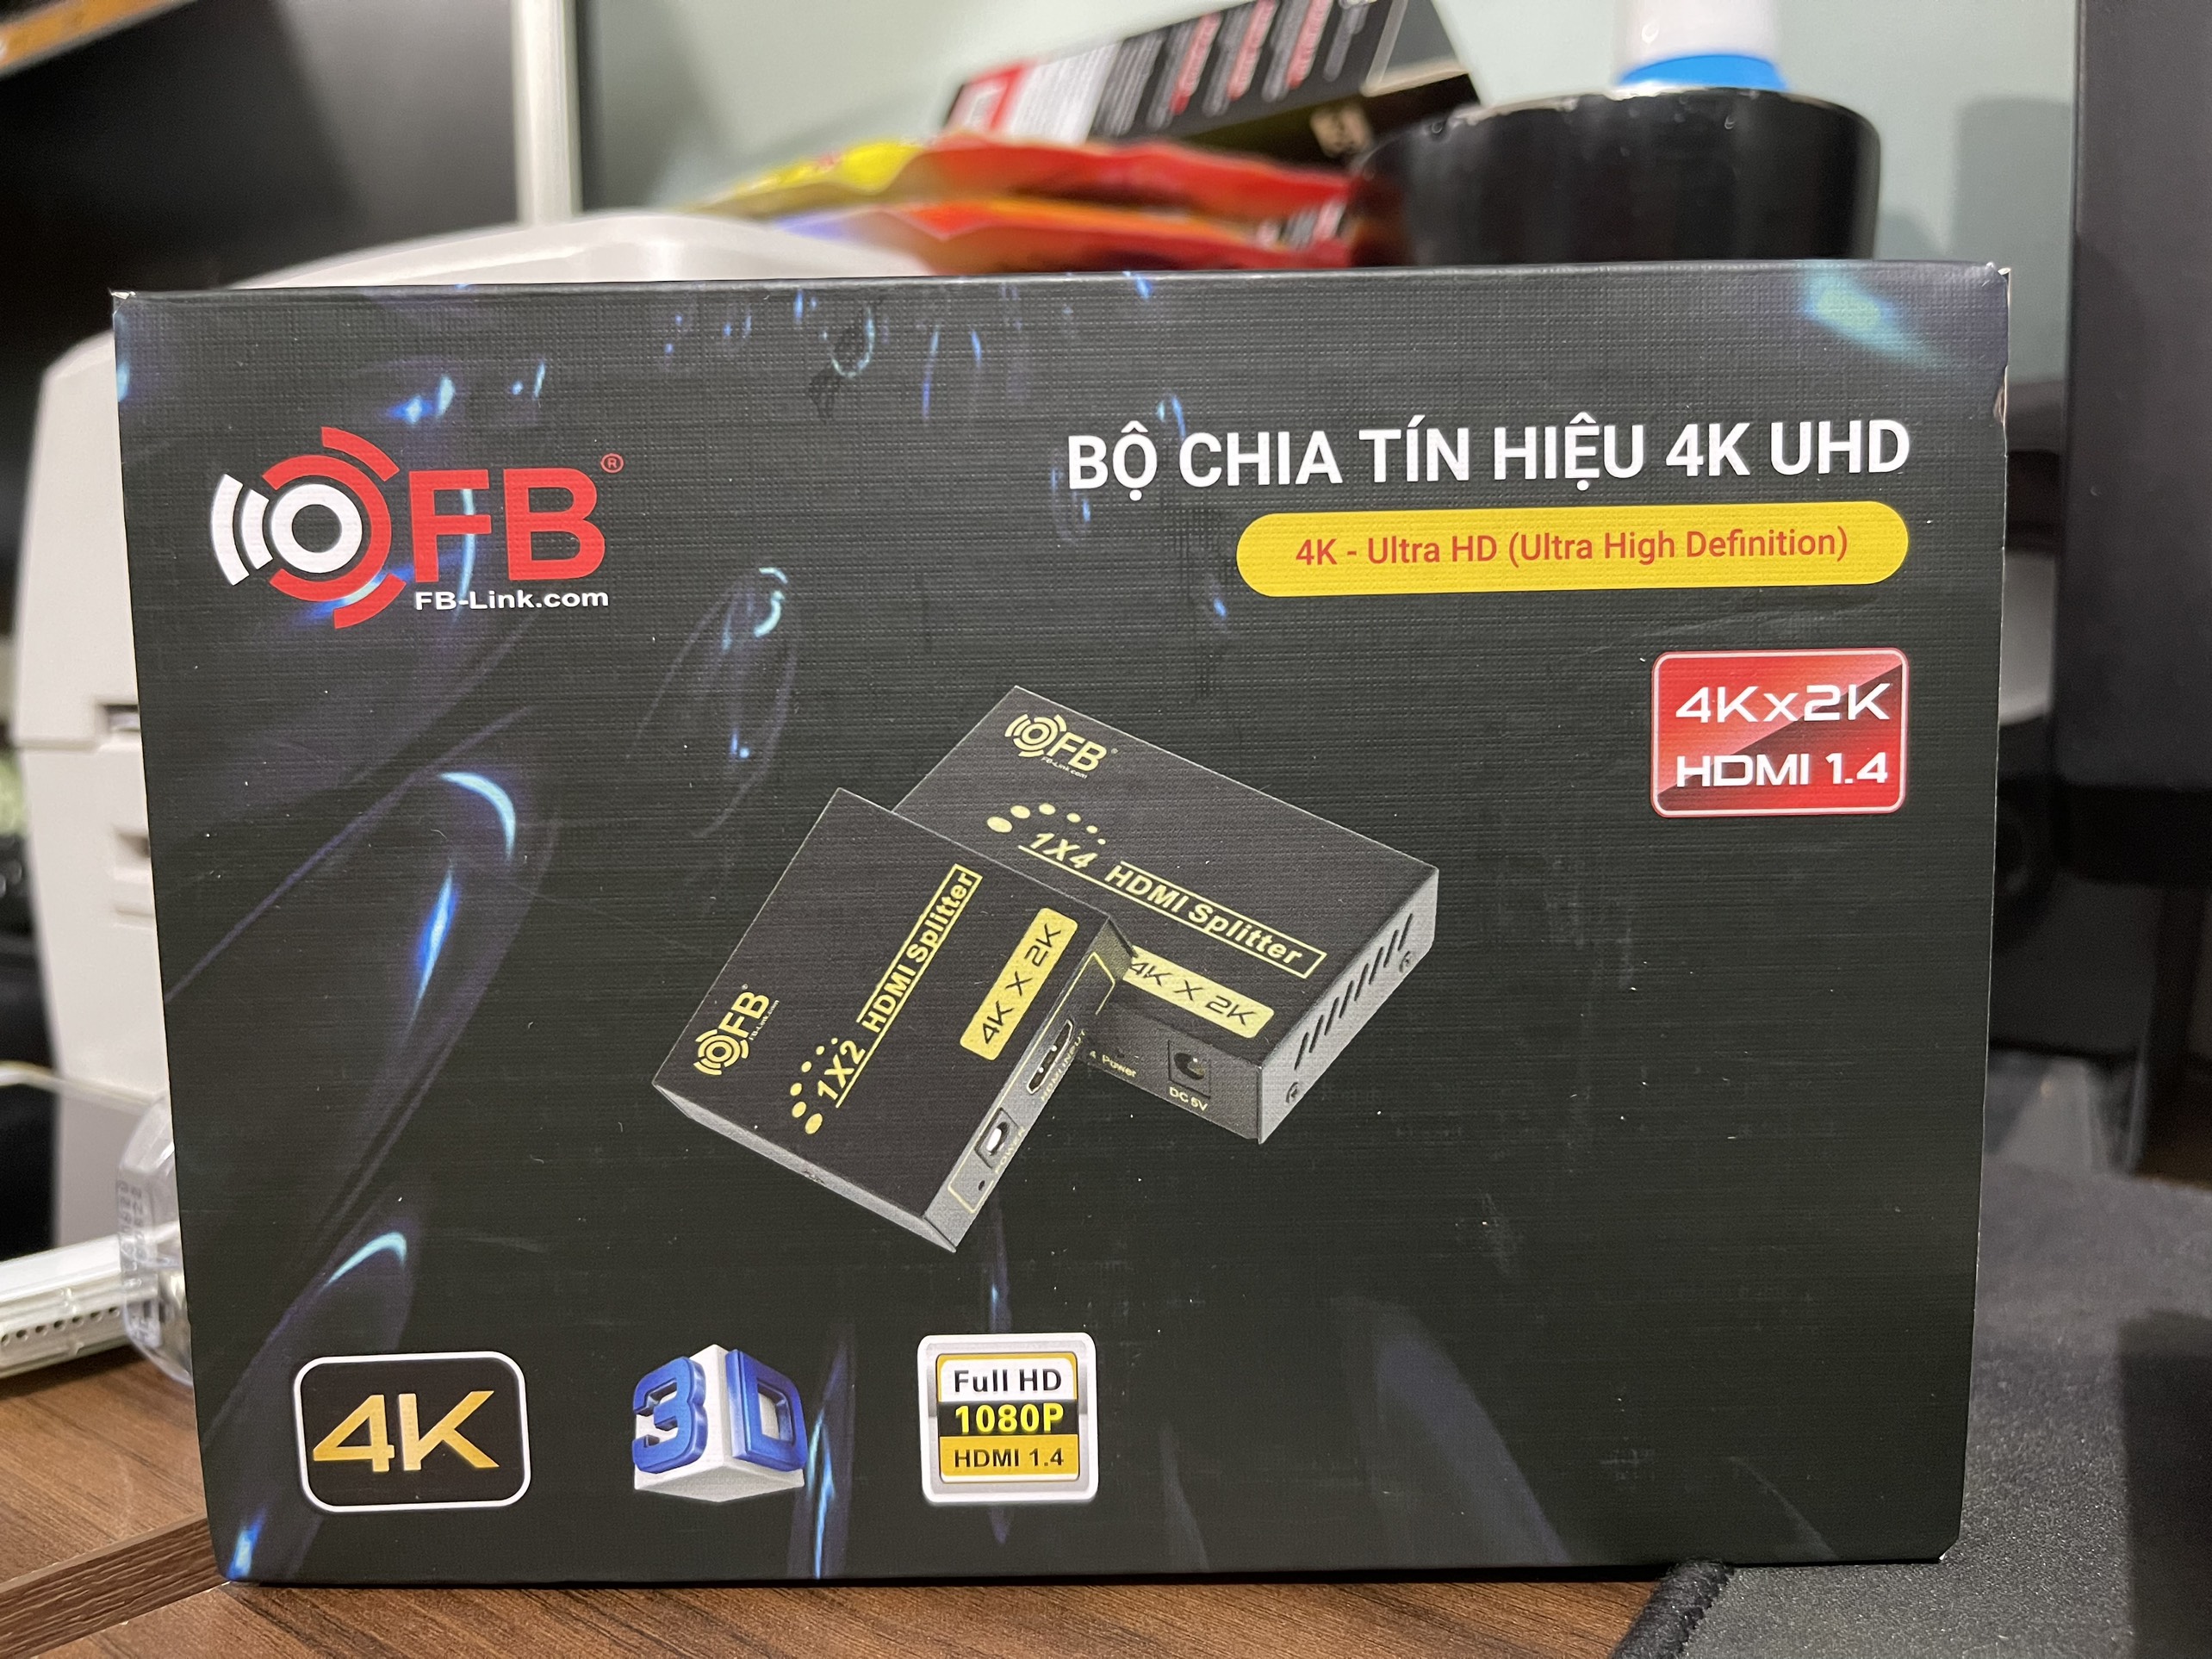 Bộ chia HDMI Switch 1 ra 2 Full HD 1080 đen - Hàng Chính Hãng